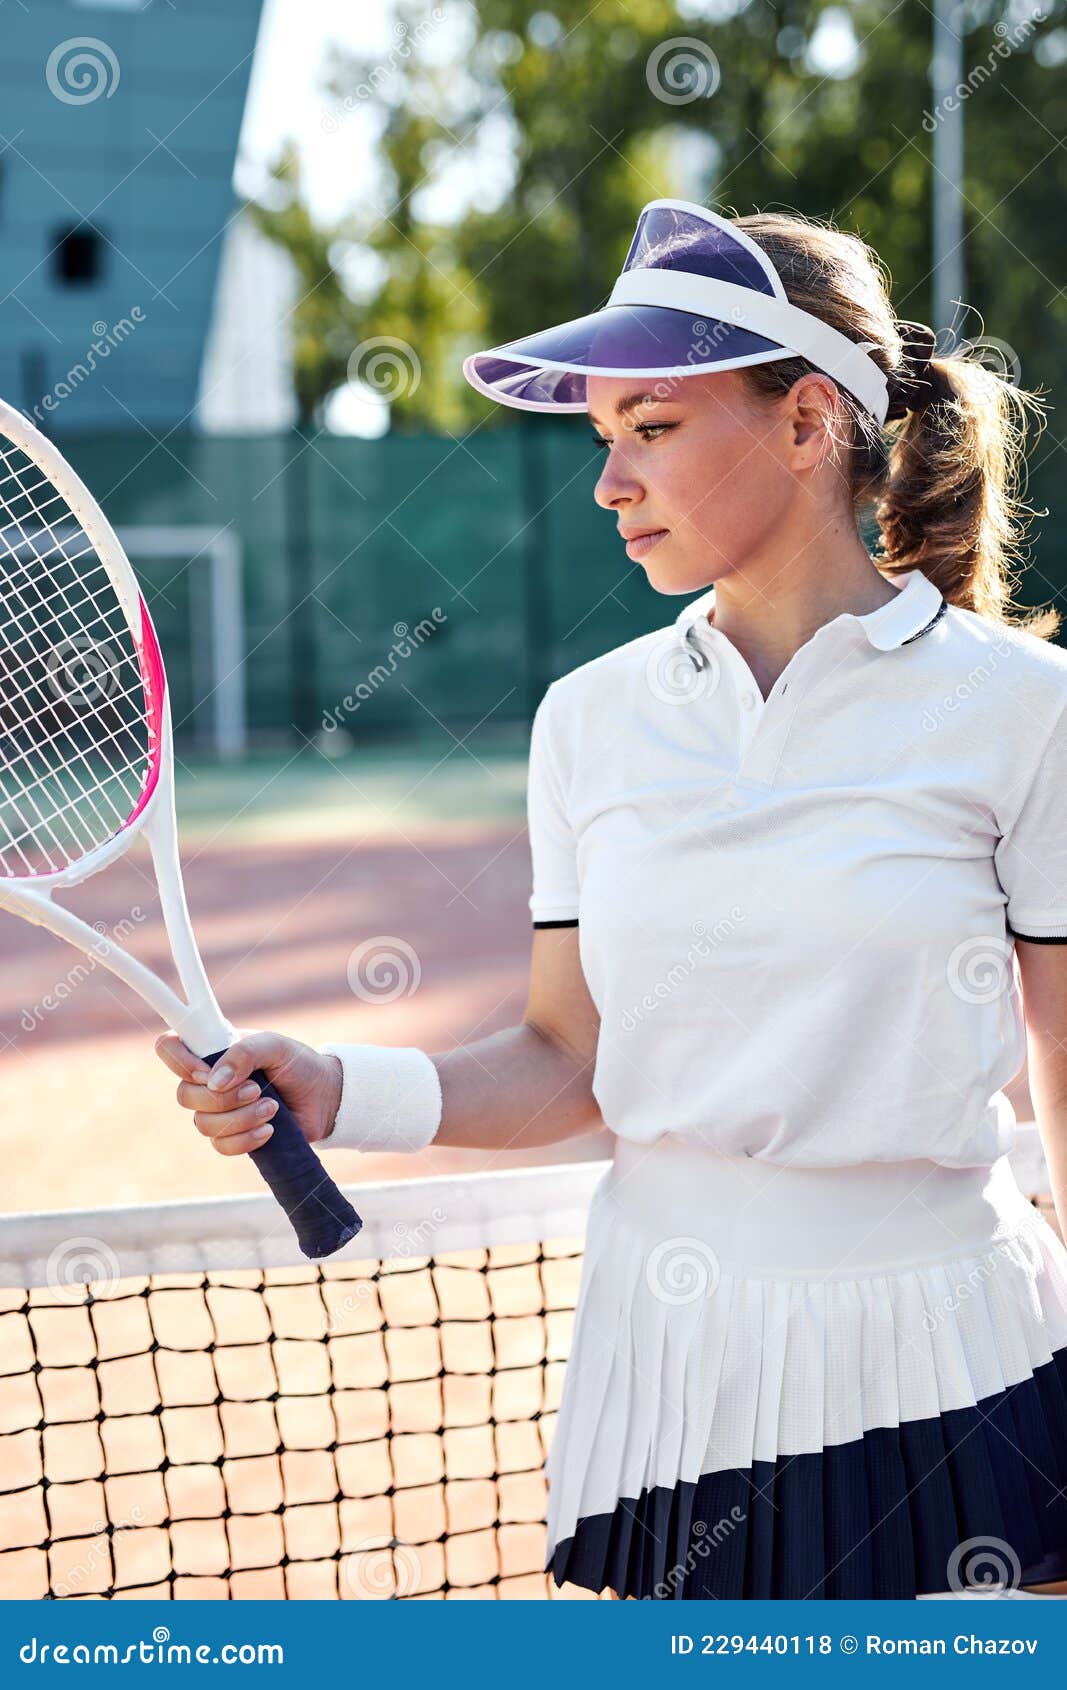 La Tenista Femenina Con Uniforme Deportivo Se Está Relajando En La Pista Foto de archivo - de aplastar, casquillo: 229440118